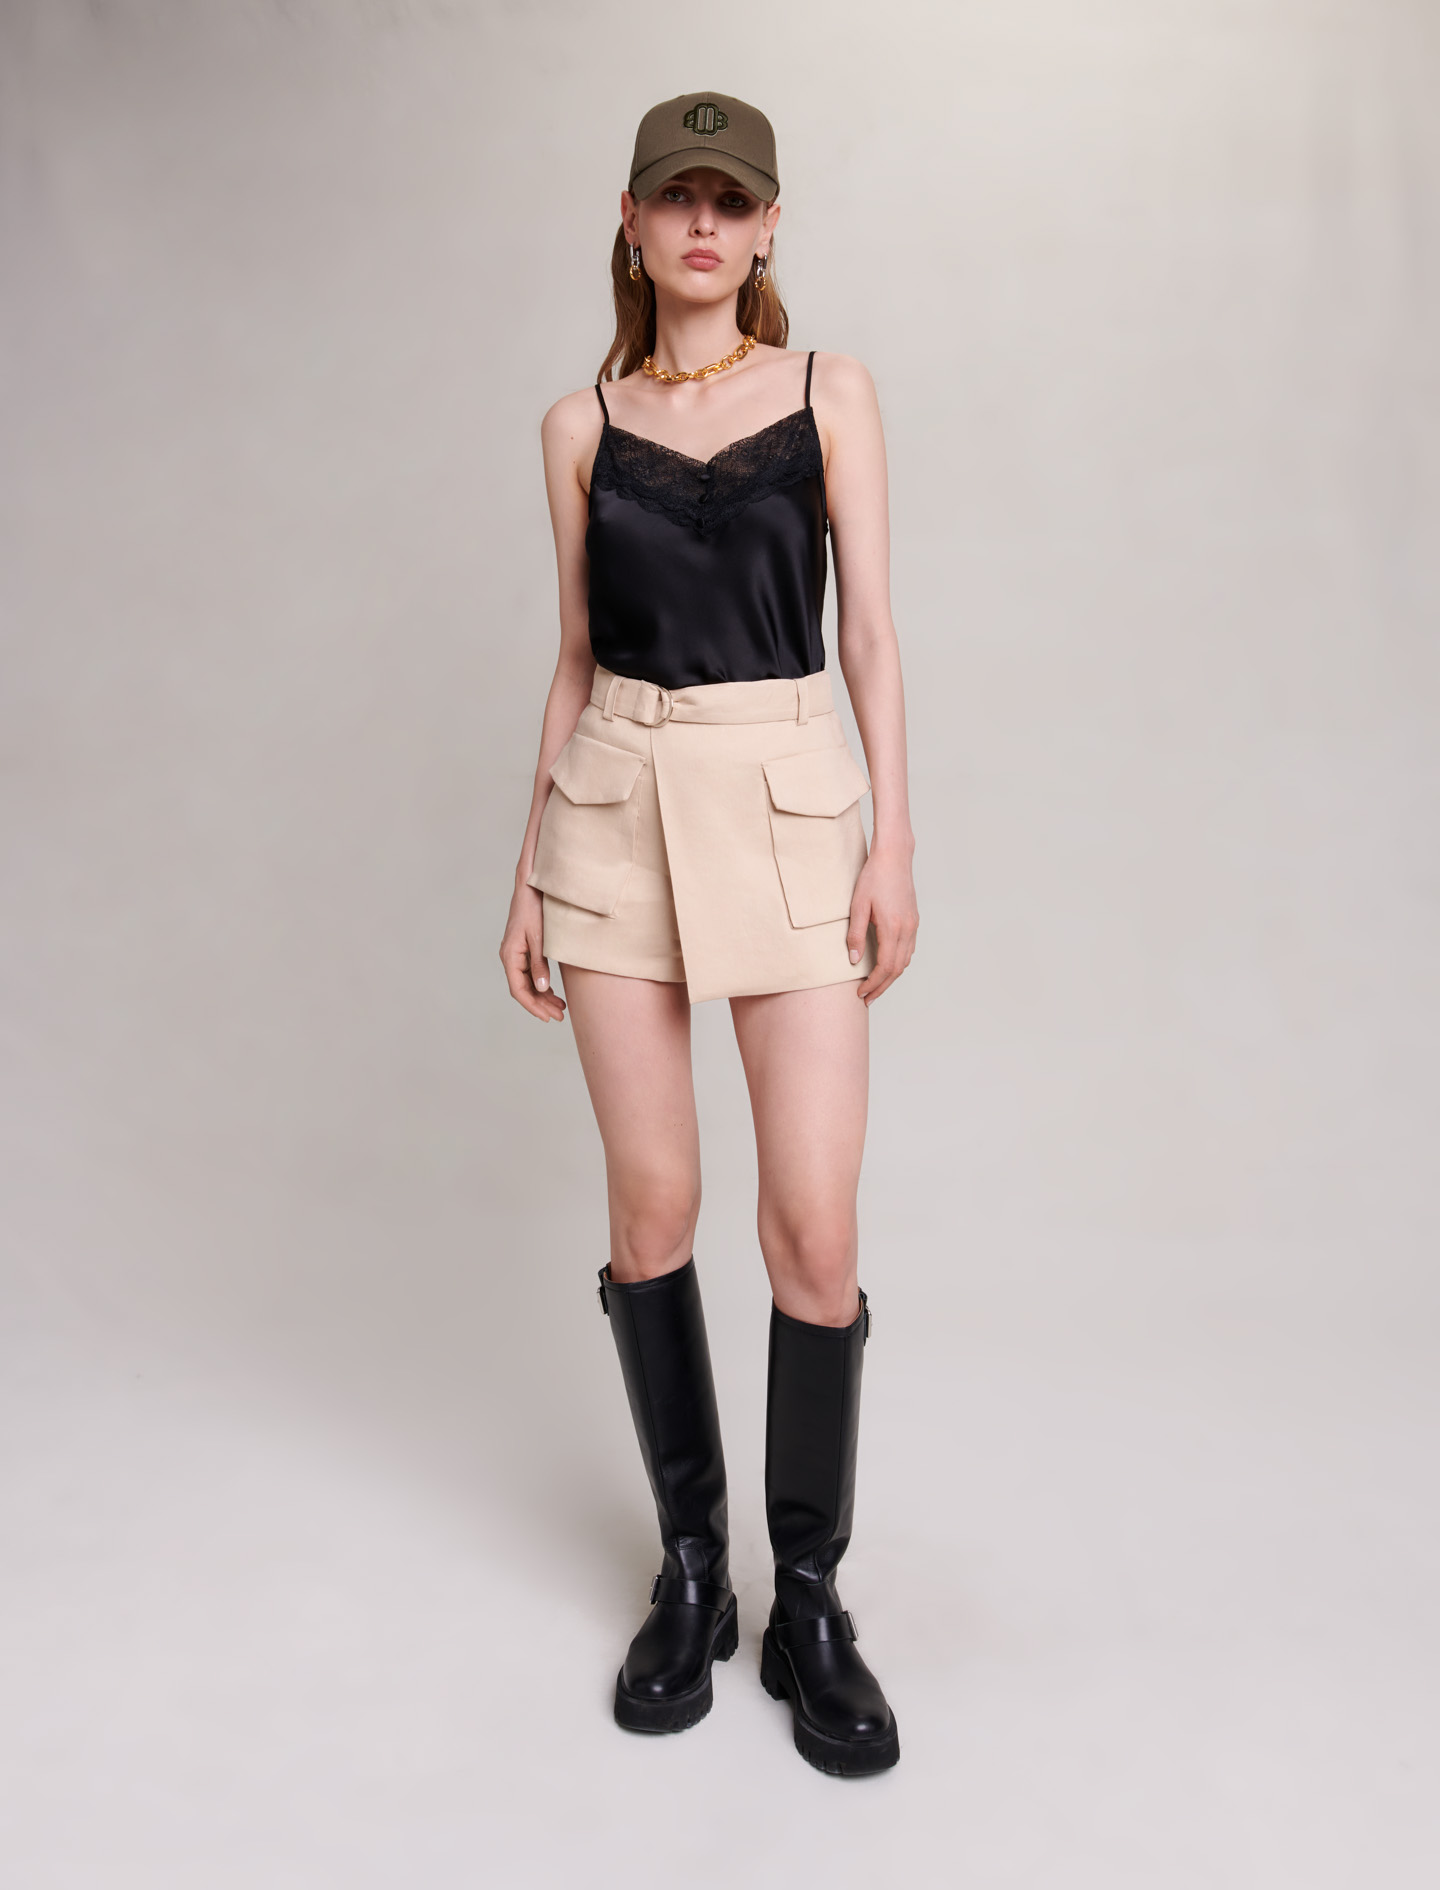 Maje Woman's linen, Asymmetric shorts for Fall/Winter, in color Beige / Beige